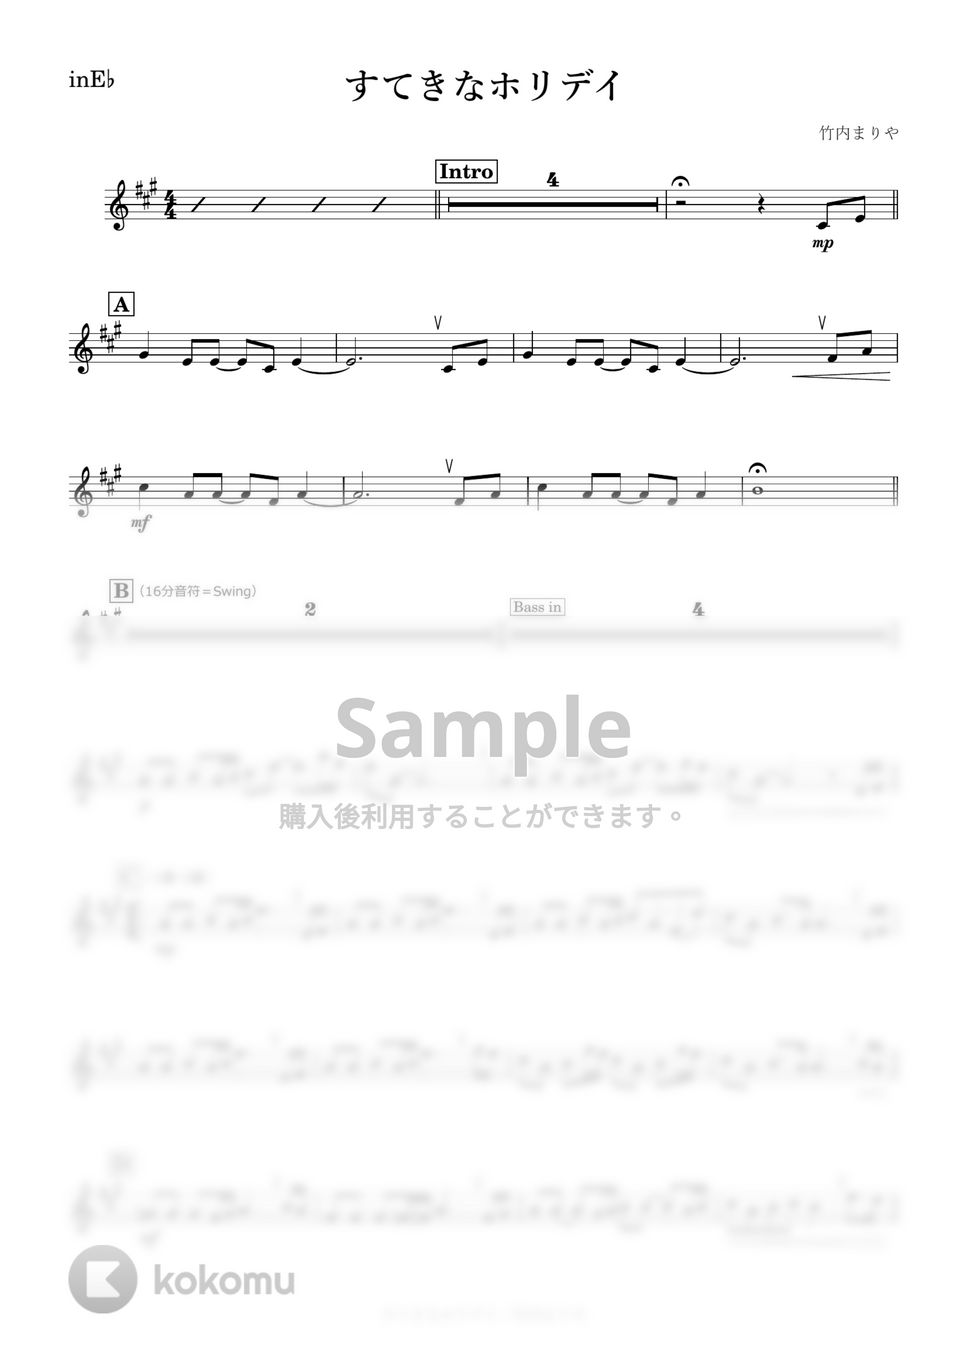 竹内まりや - すてきなホリデイ (E♭) by kanamusic